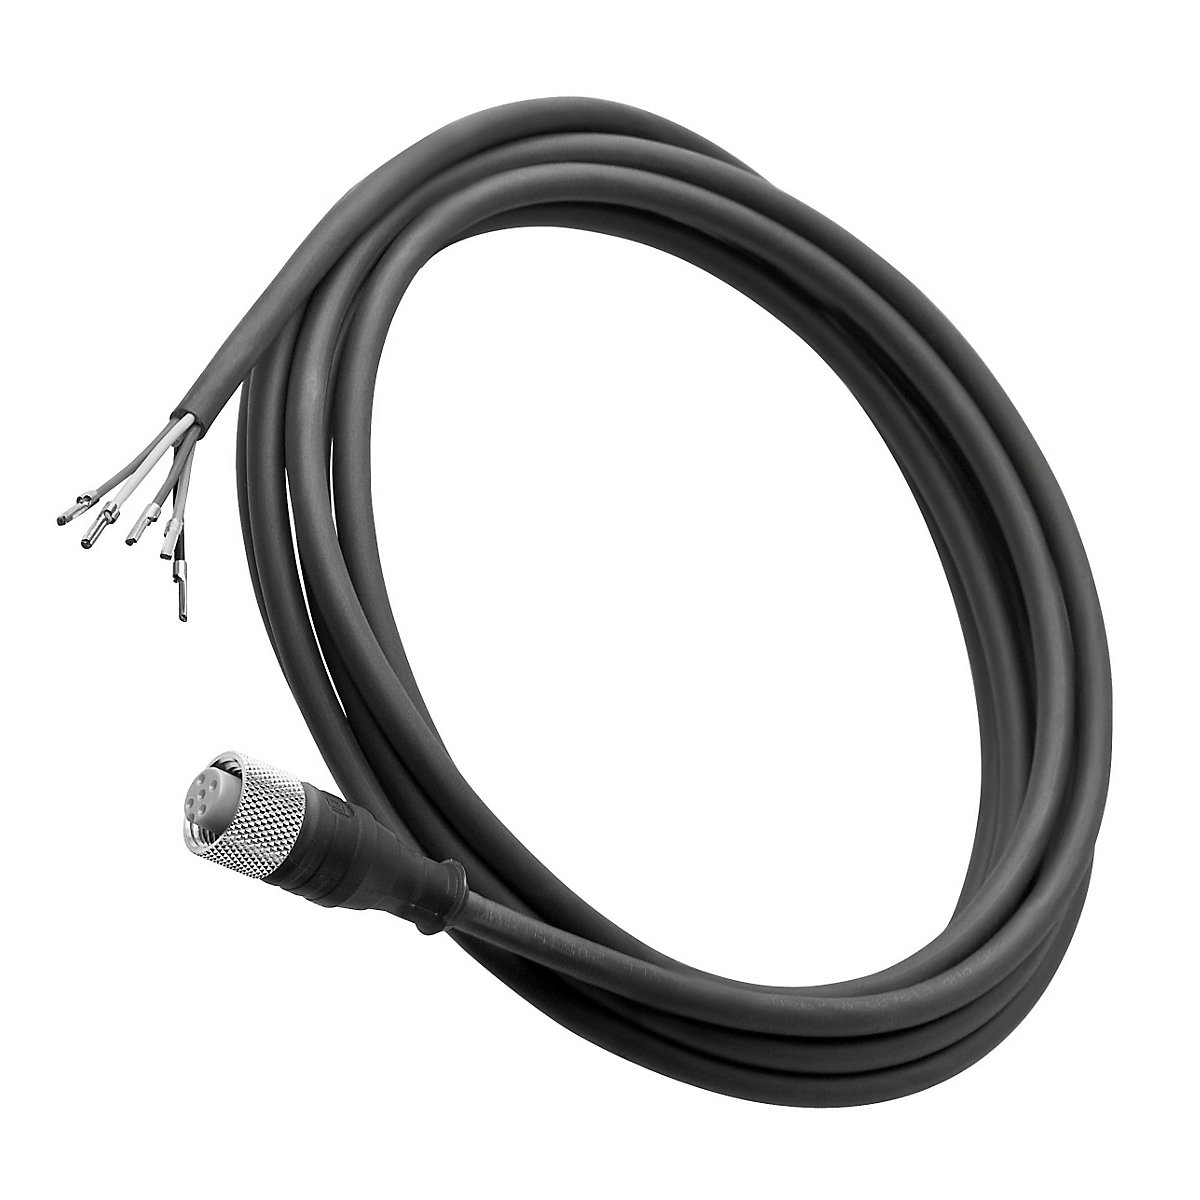 Connection cable, black - Waldmann